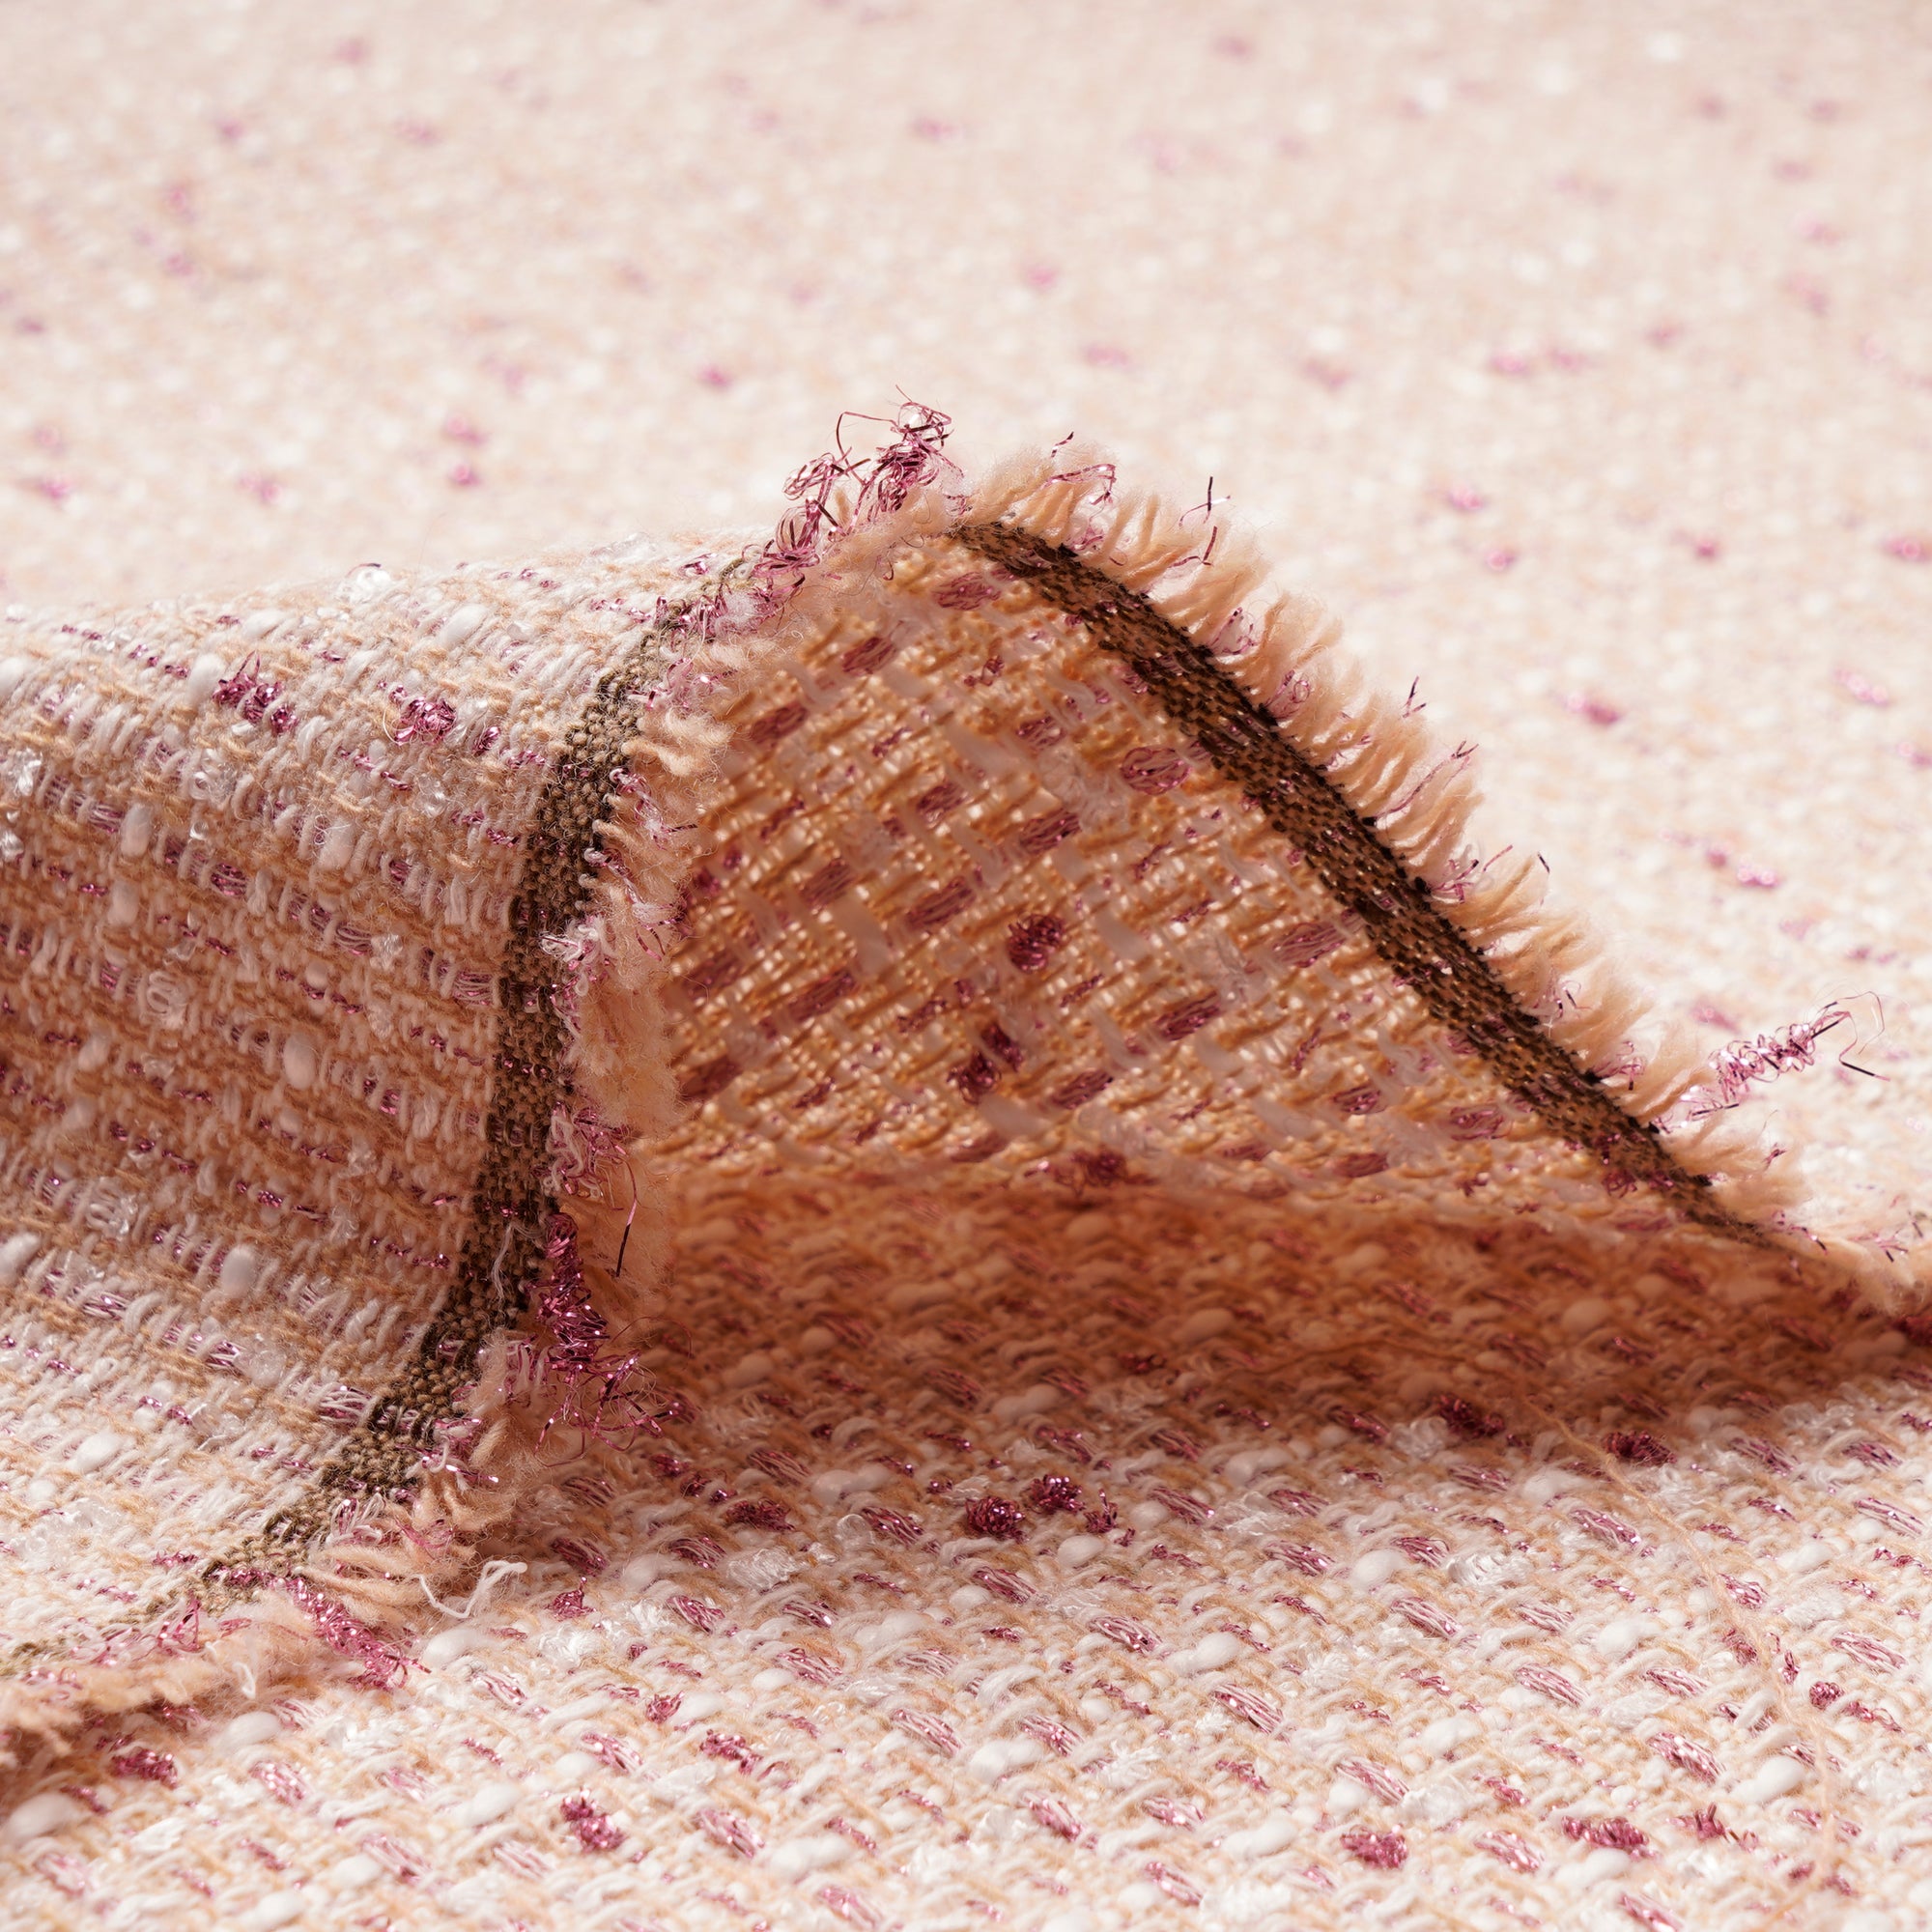 Beige-Pink Premium Metallic Tweed Fabric (60" Width)